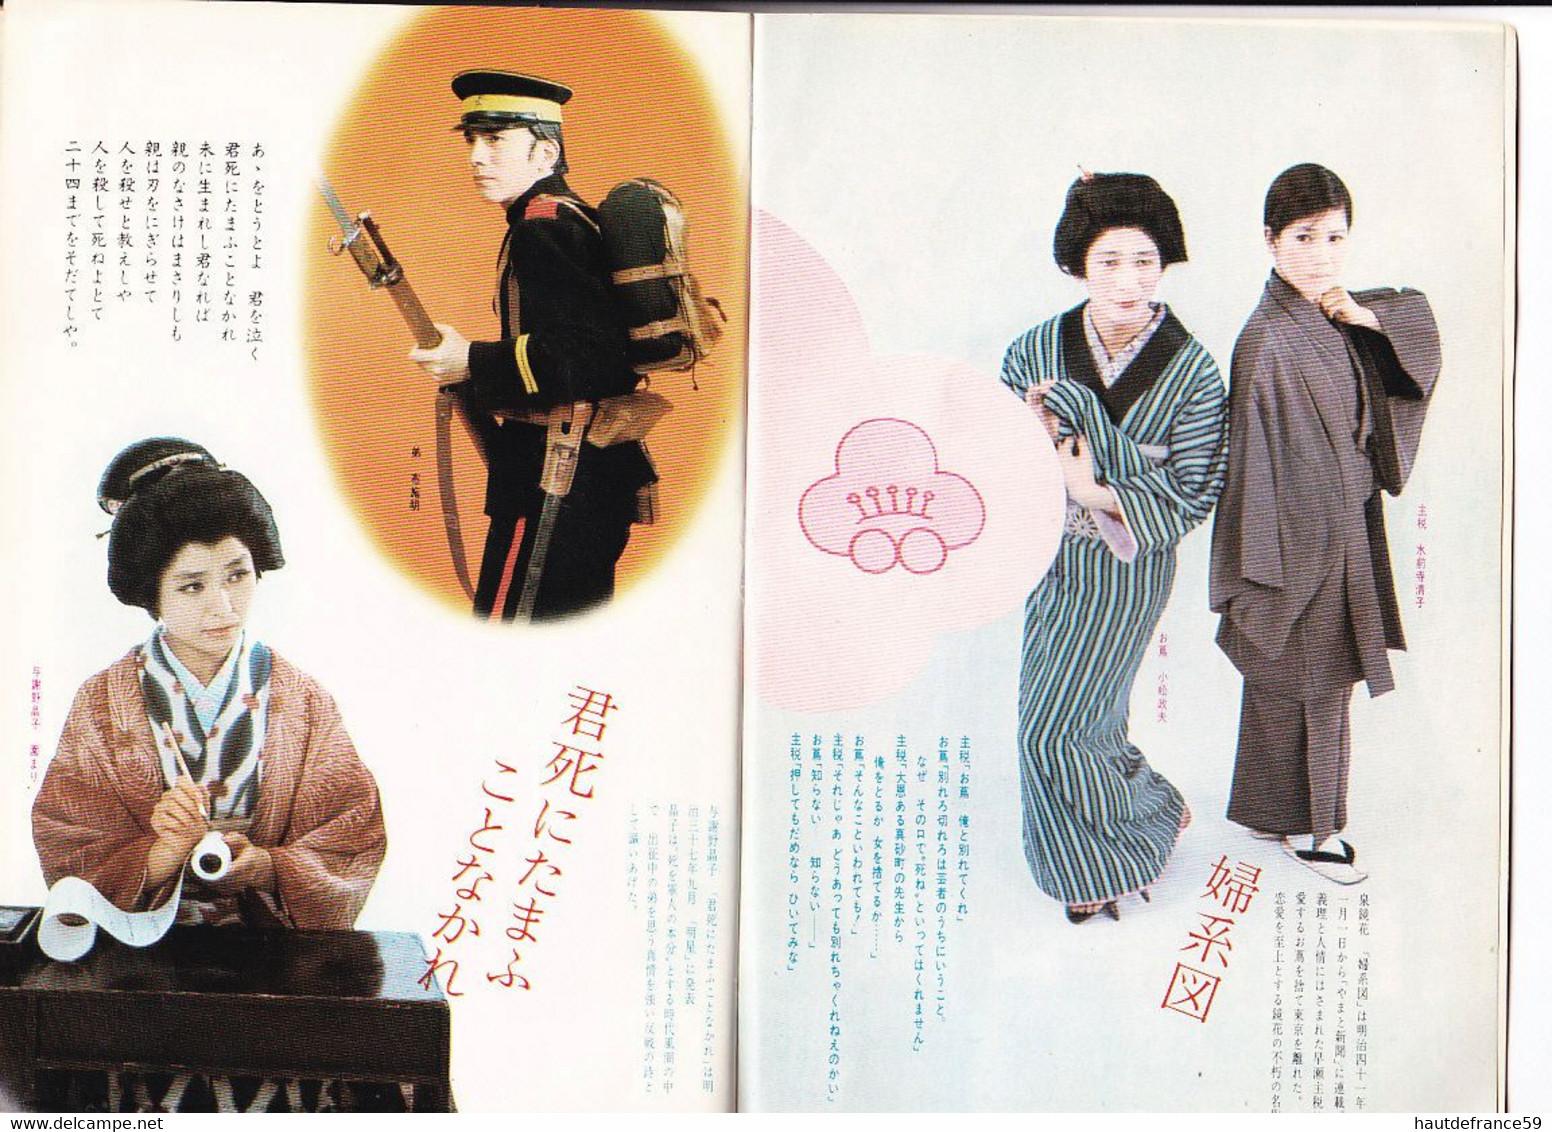 très rare Programme télévision en japonnais - JAPON 1967 partition Words photographies bandes dessinées publicités Coca